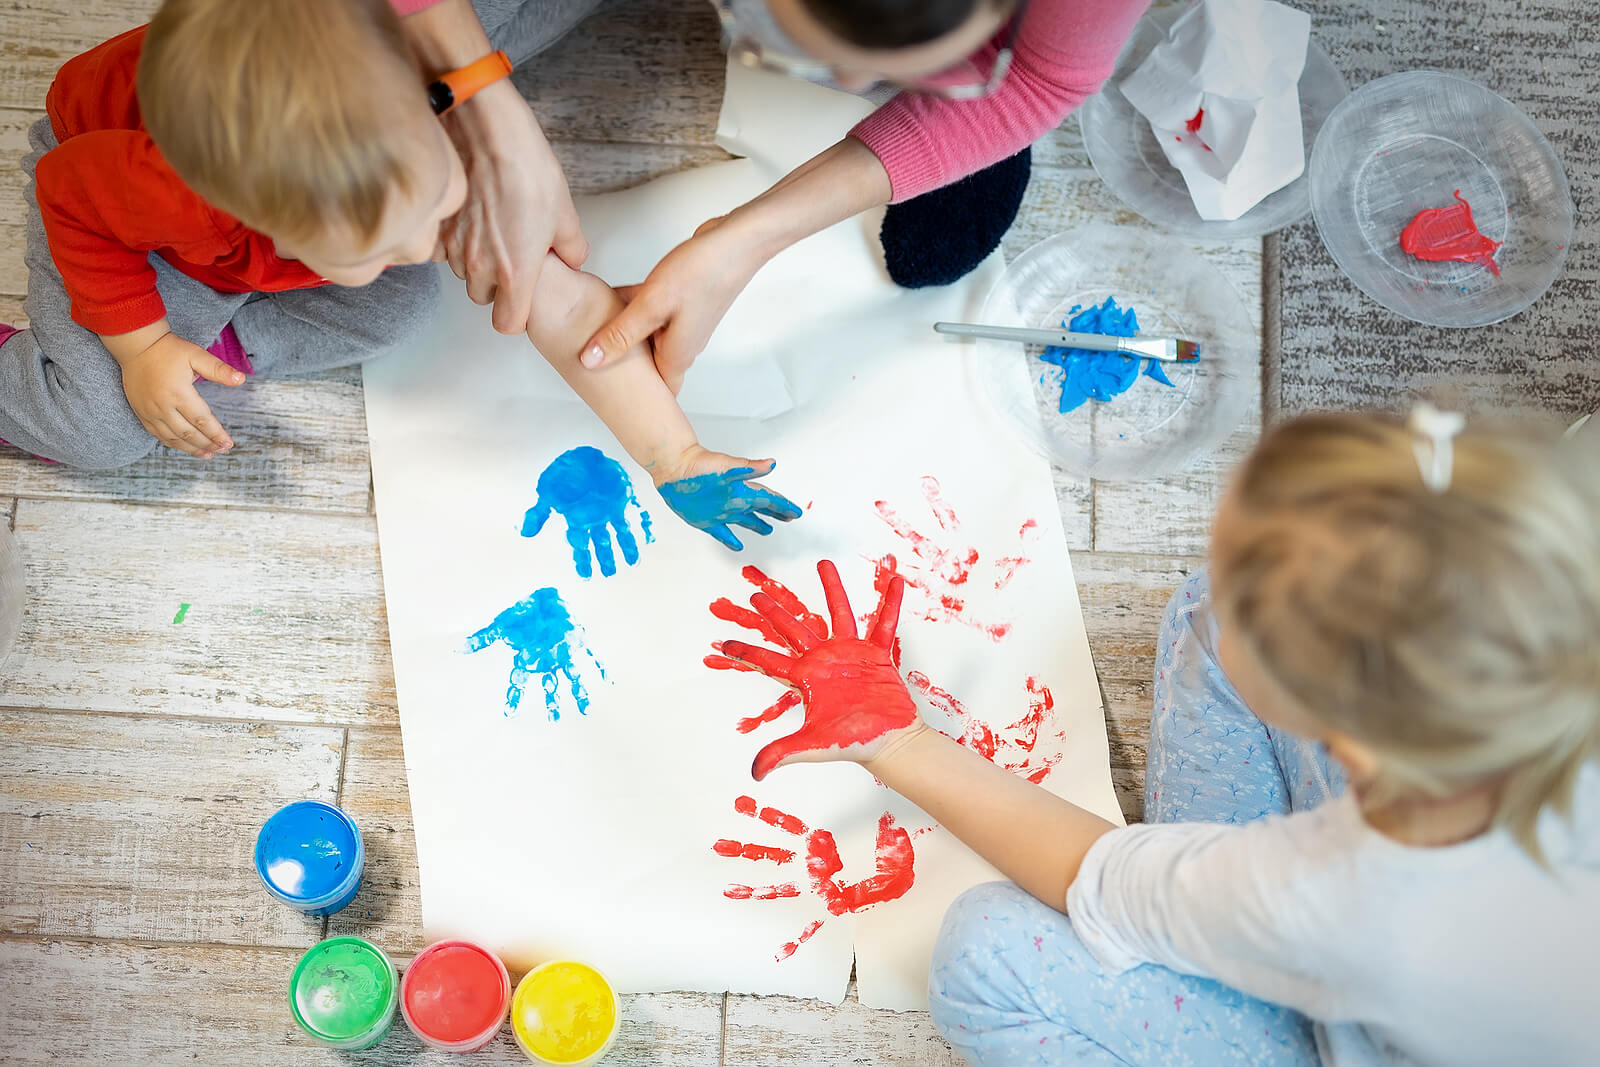 Madre con sus hijos jugando a pintar con los dedos y las manos un mural.